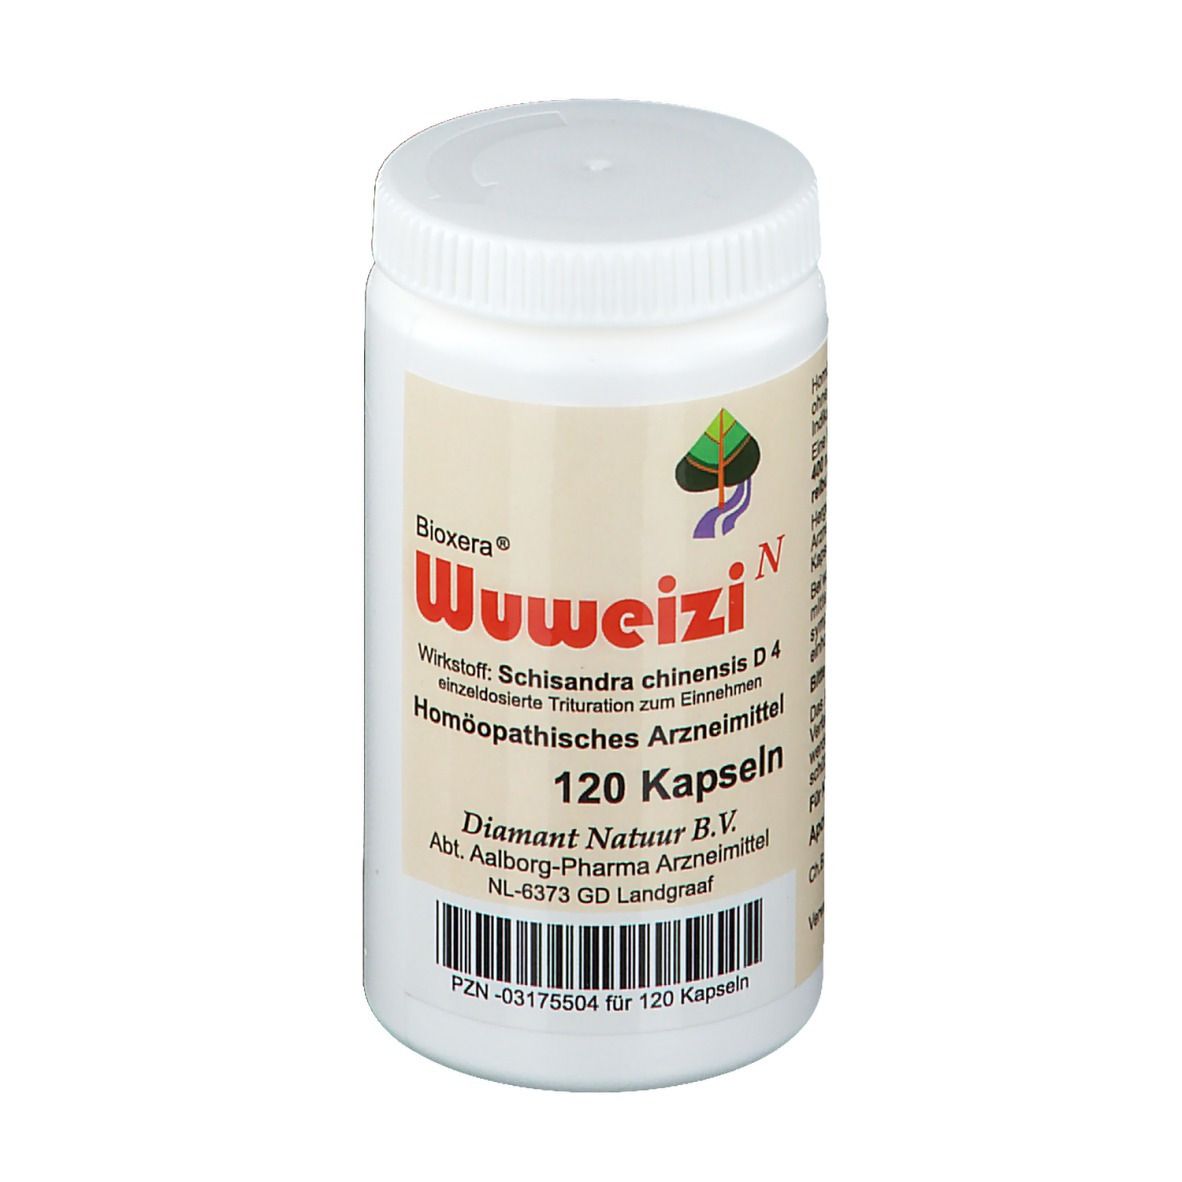 Bioxera® Wuweizi